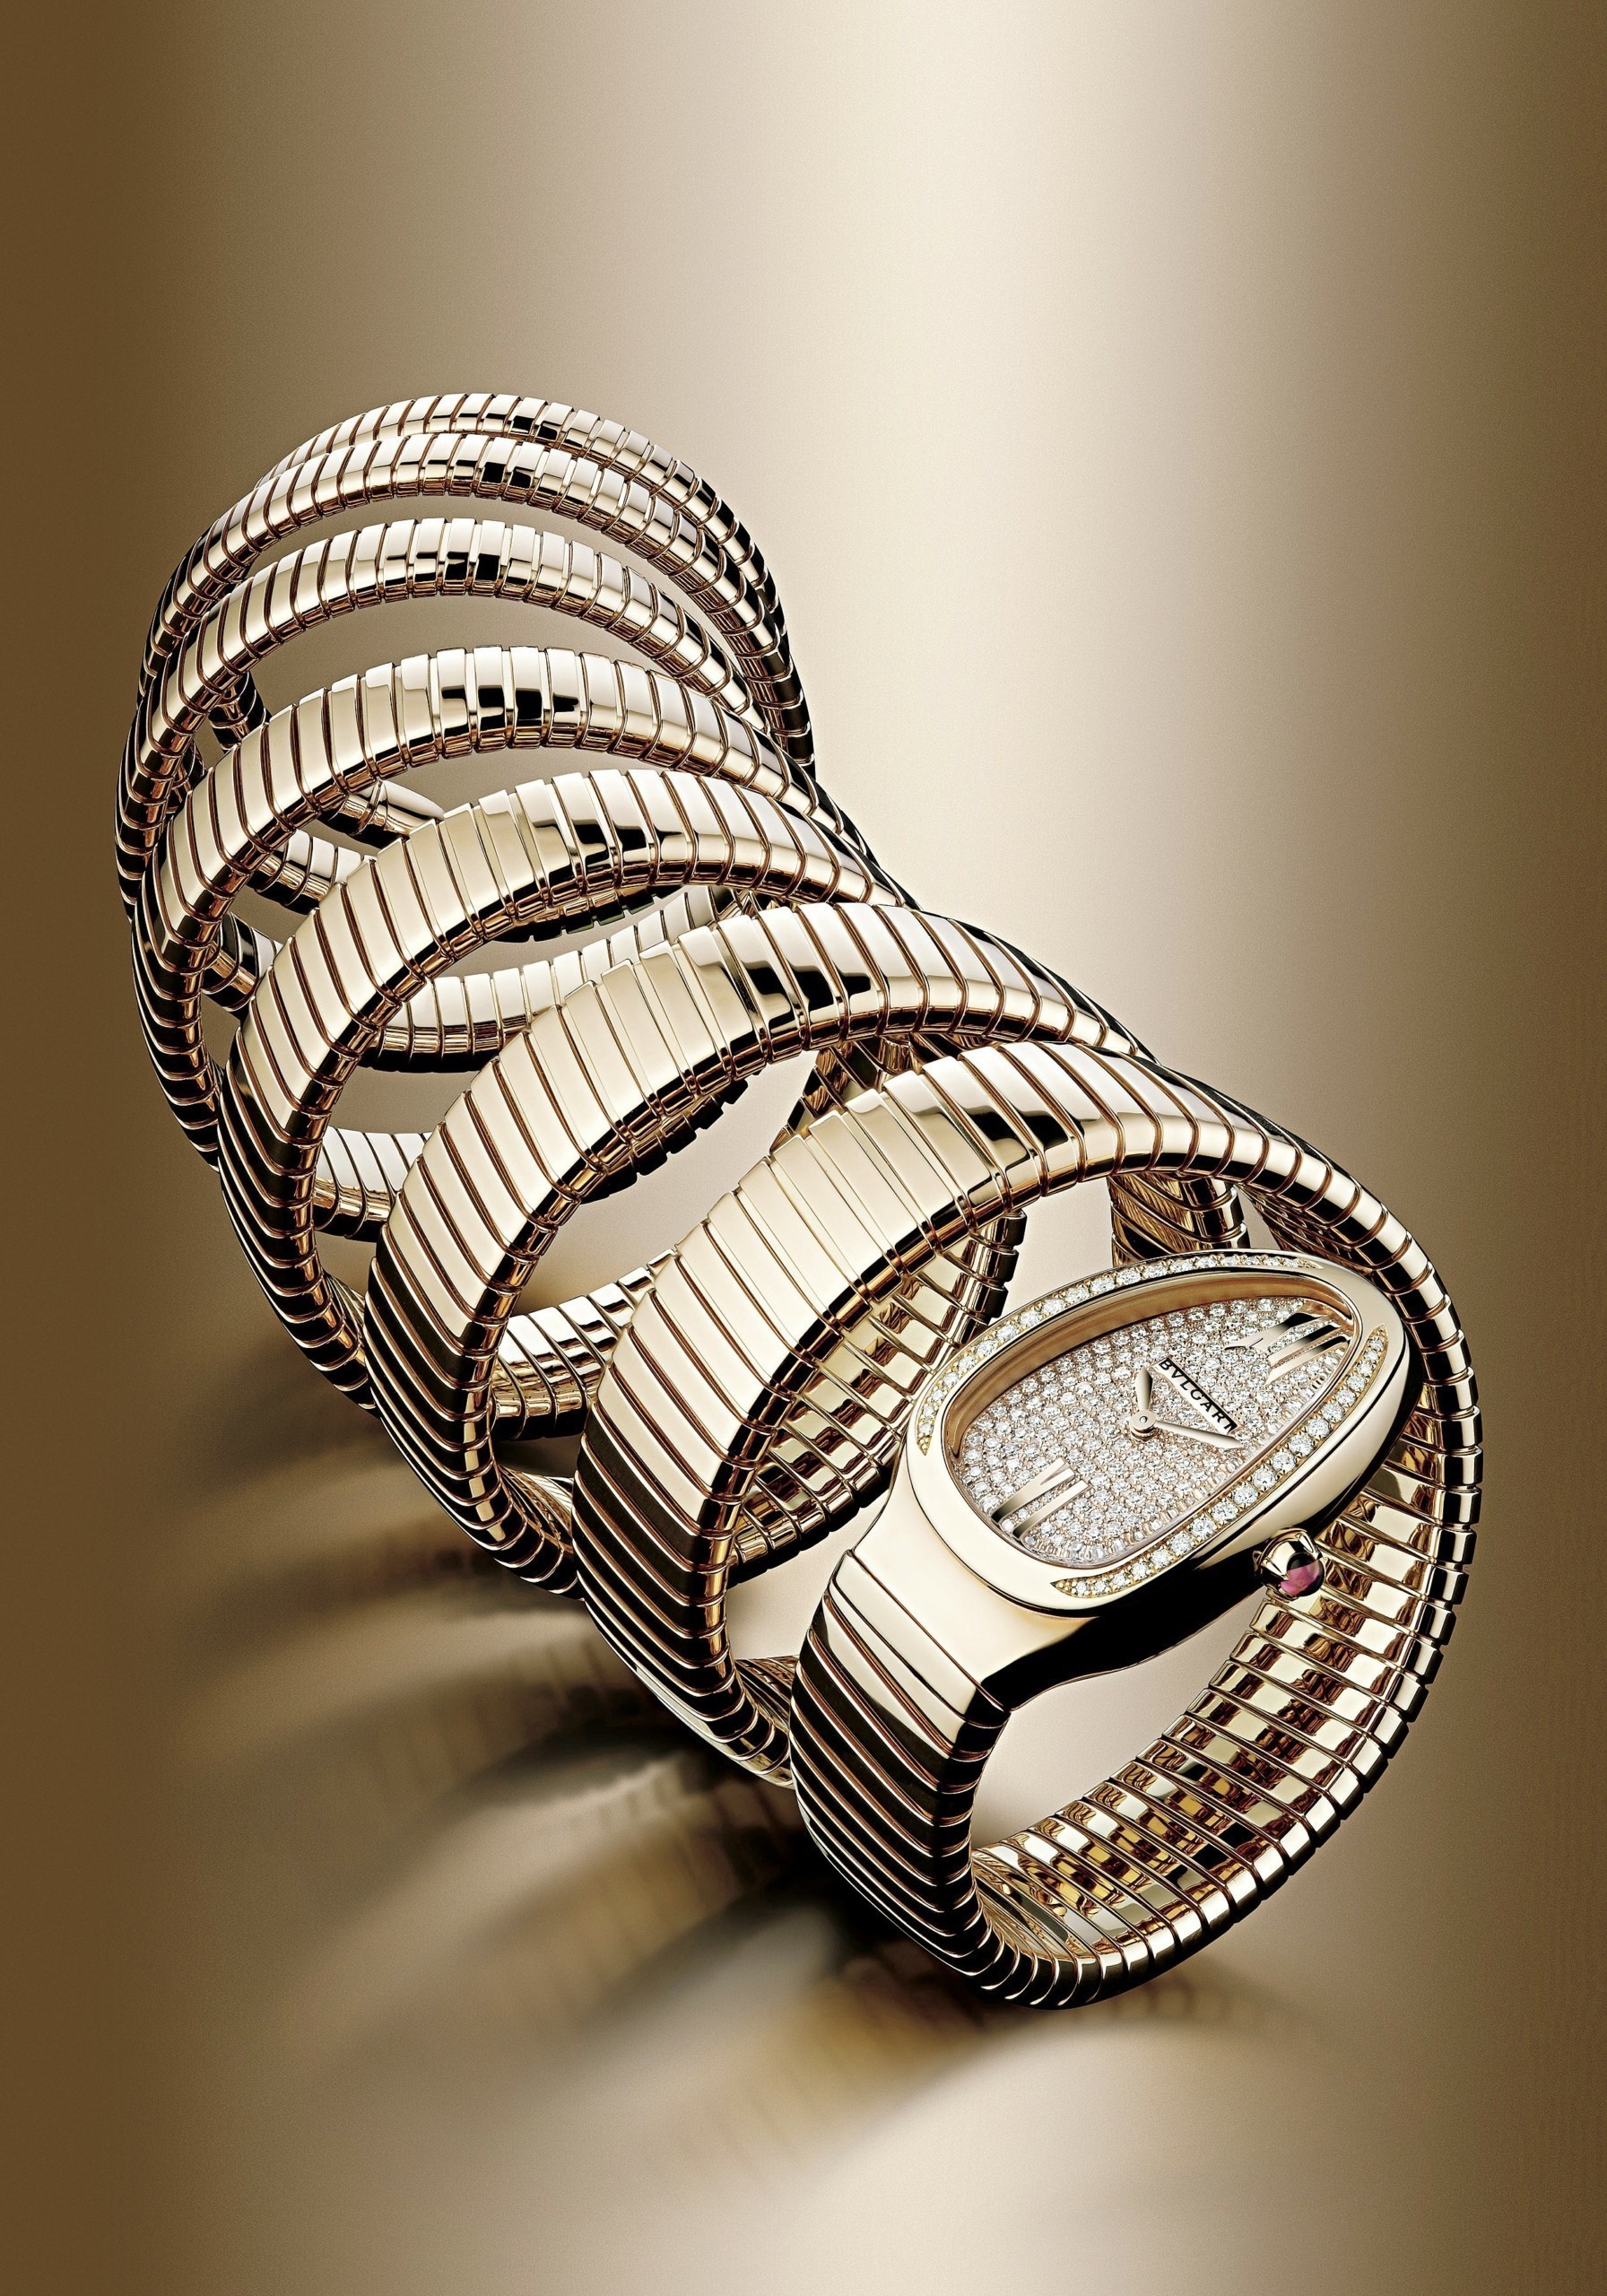 Ρολόγια Βulgari – Κοσμήματα υψηλής ωρολογοποιίας